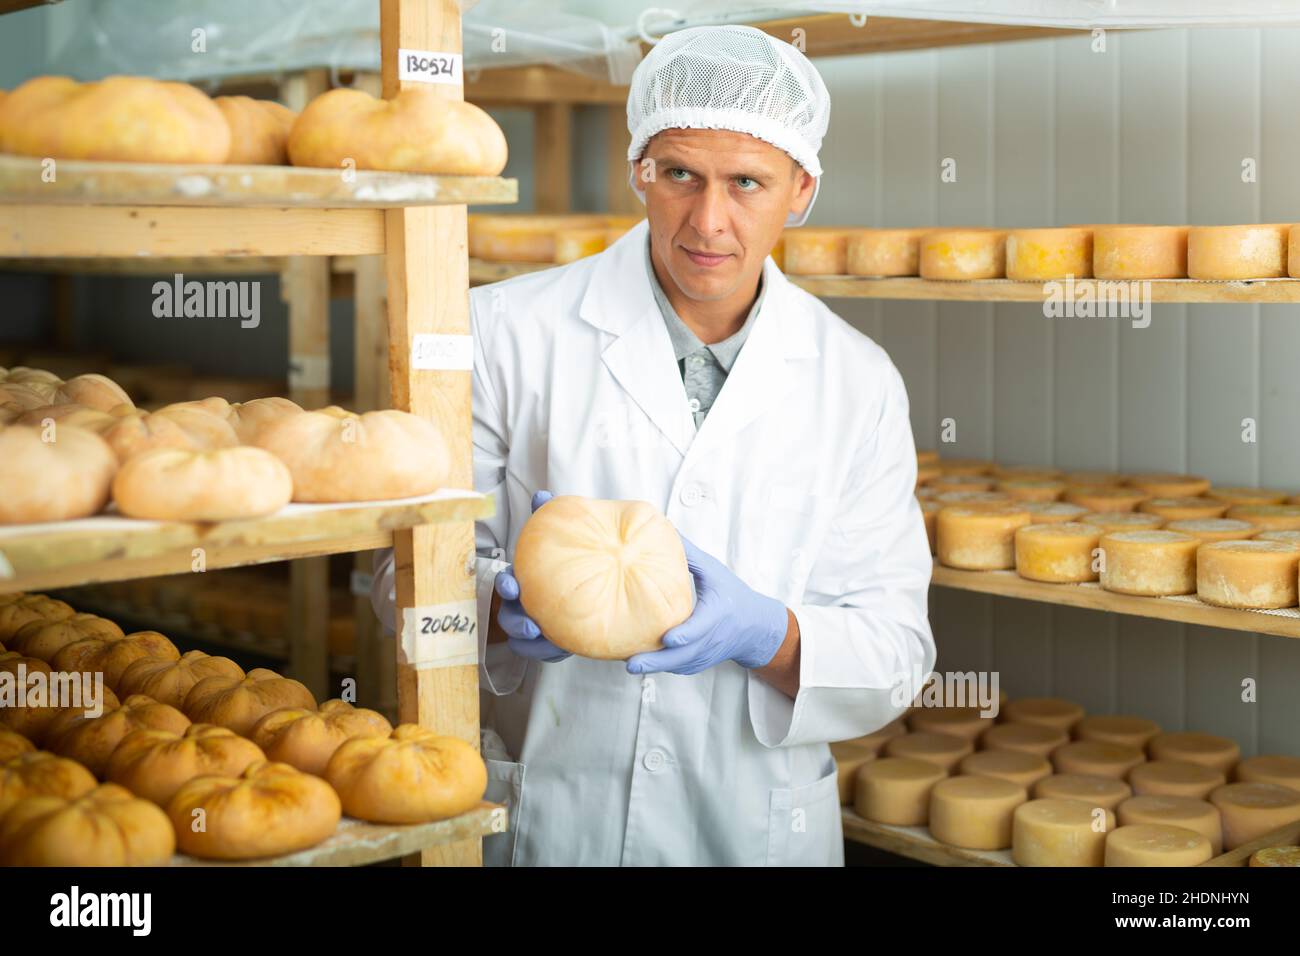 Cheese maker immagini e fotografie stock ad alta risoluzione - Alamy